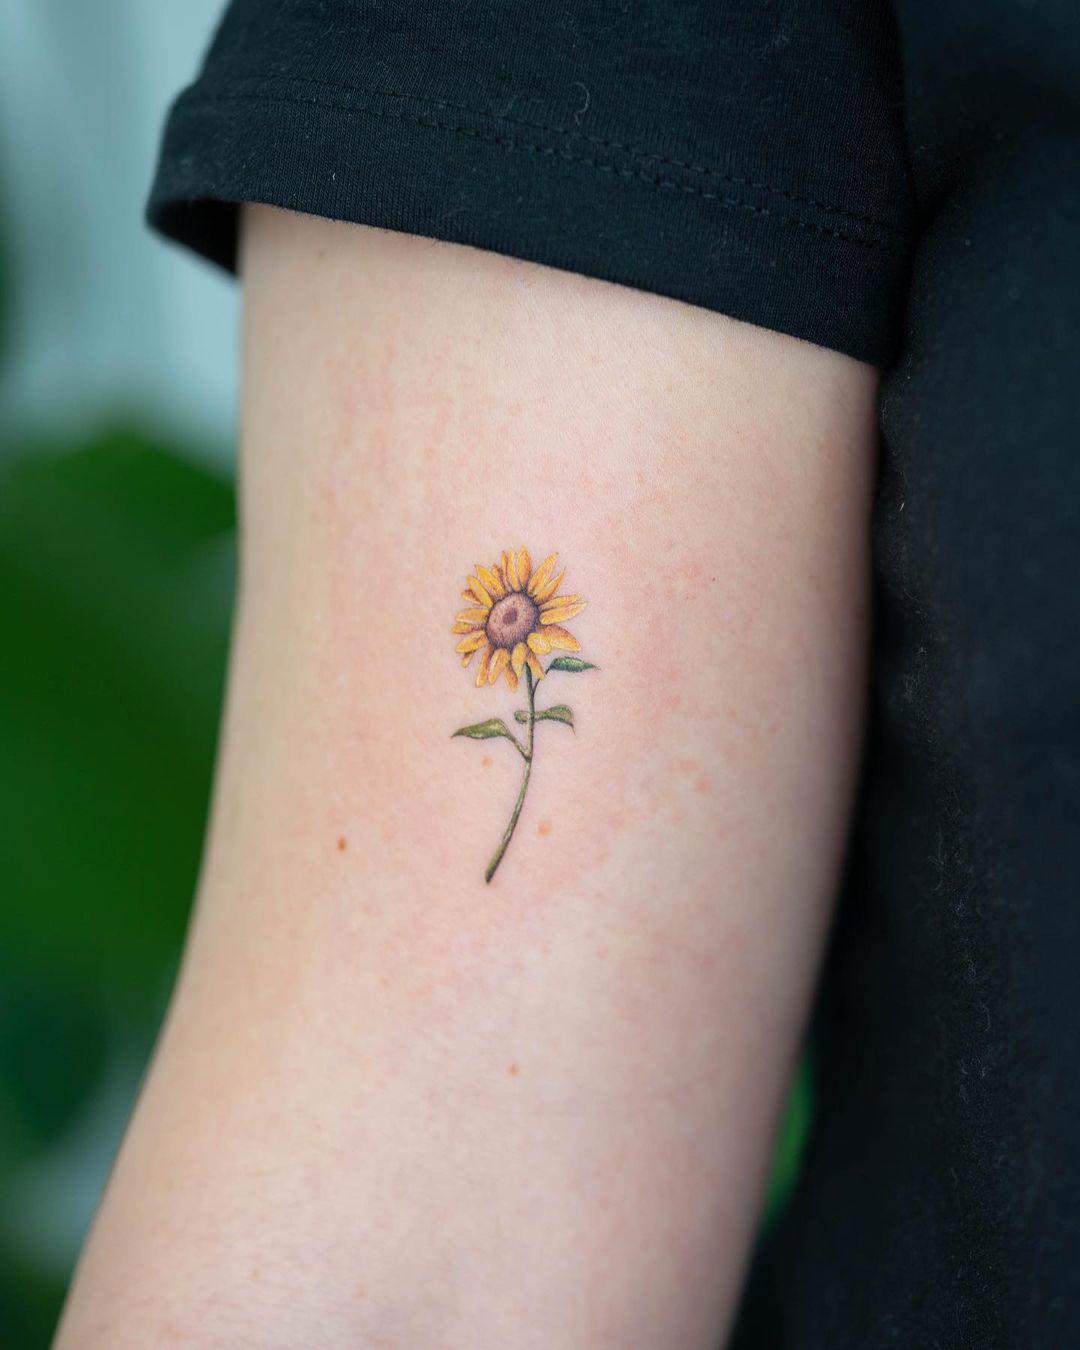 Tatuaje de flor pequeña y realista